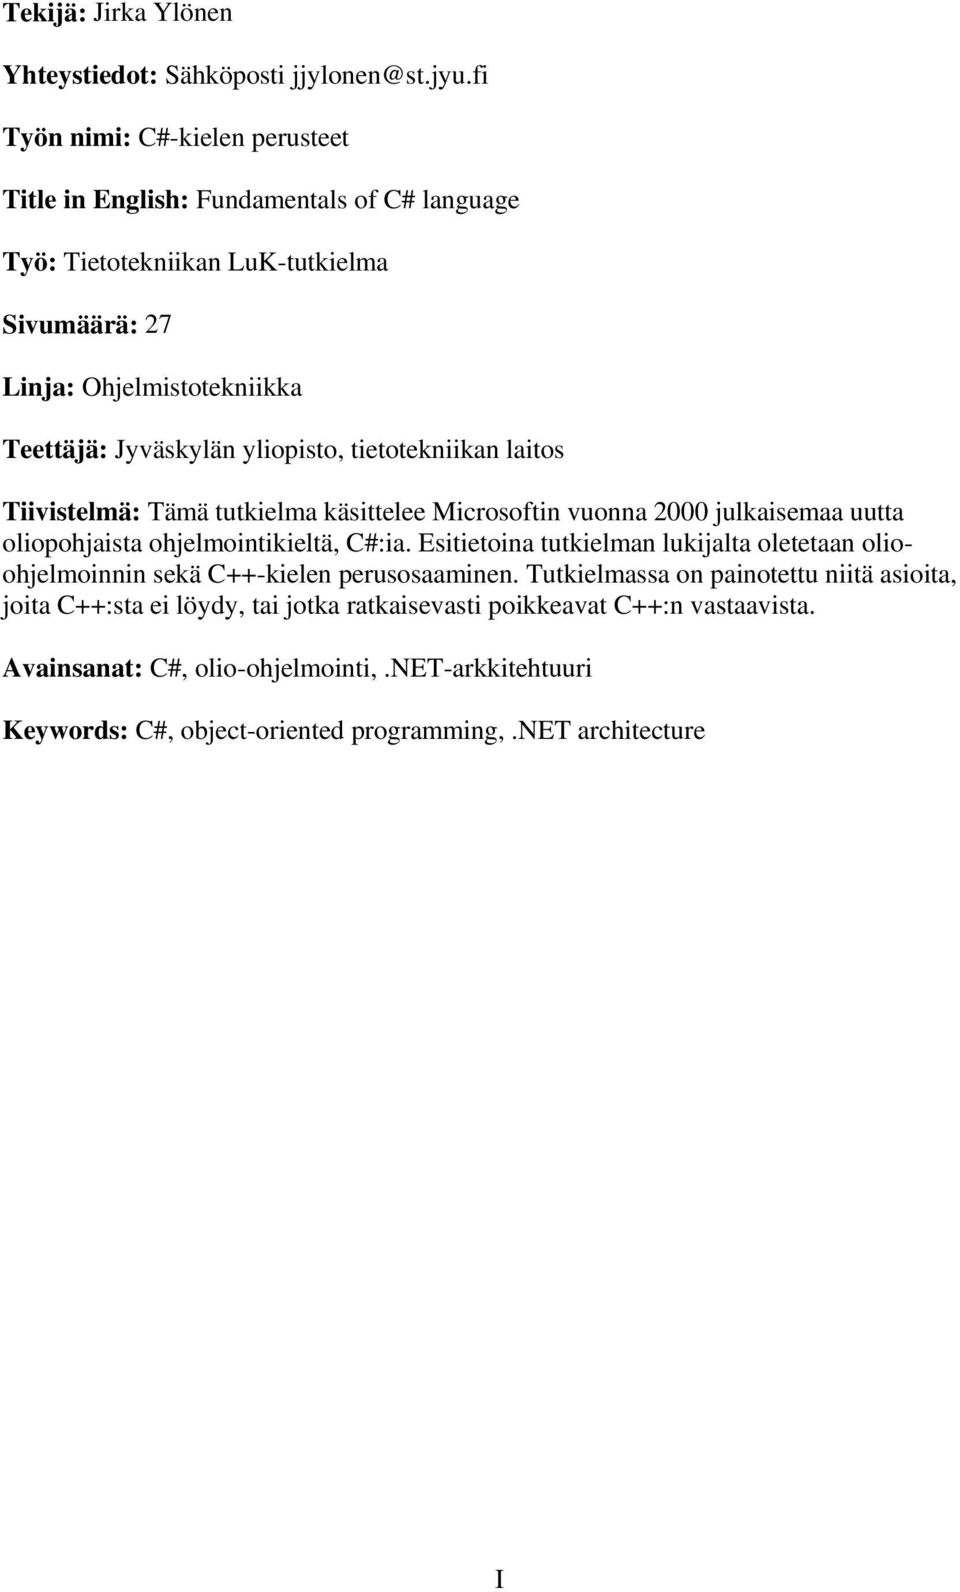 yliopisto, tietotekniikan laitos Tiivistelmä: Tämä tutkielma käsittelee Microsoftin vuonna 2000 julkaisemaa uutta oliopohjaista ohjelmointikieltä, C#:ia.